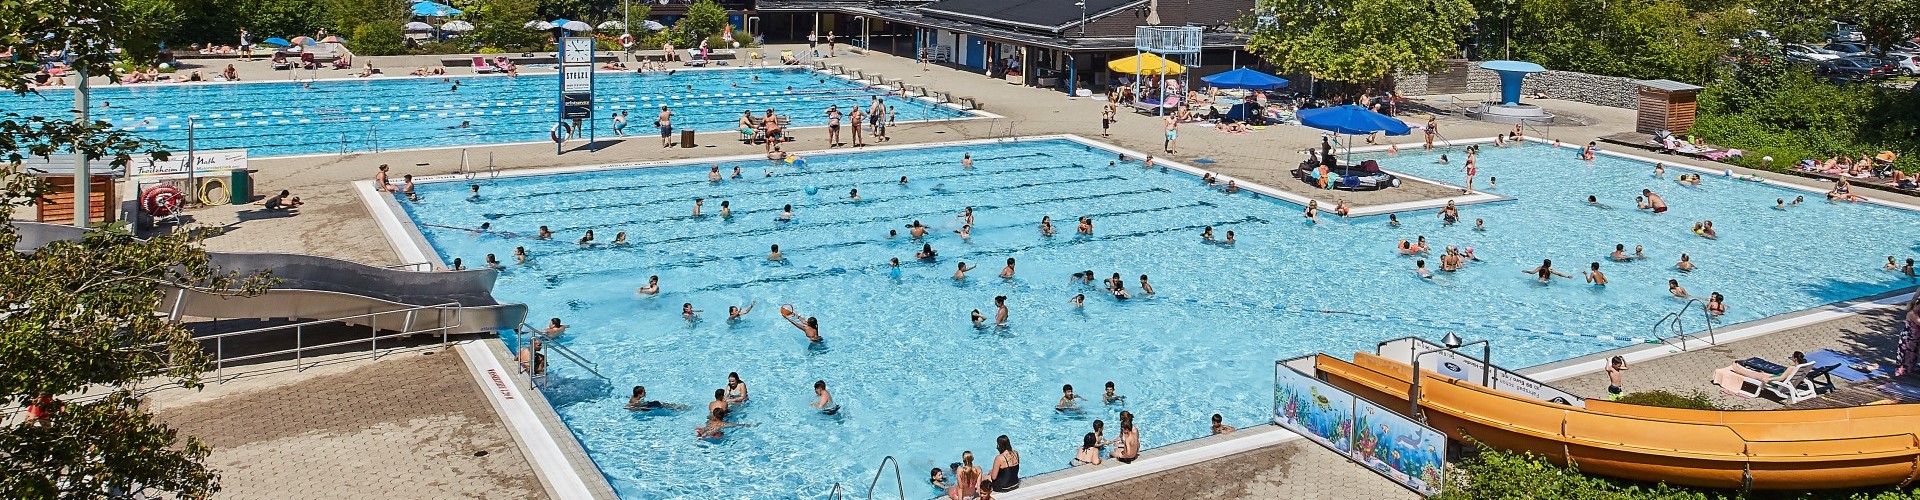 Das Schwimmbecken mit Rutsche im Freibad St. Georgen in Altötting ist voller Menschen.